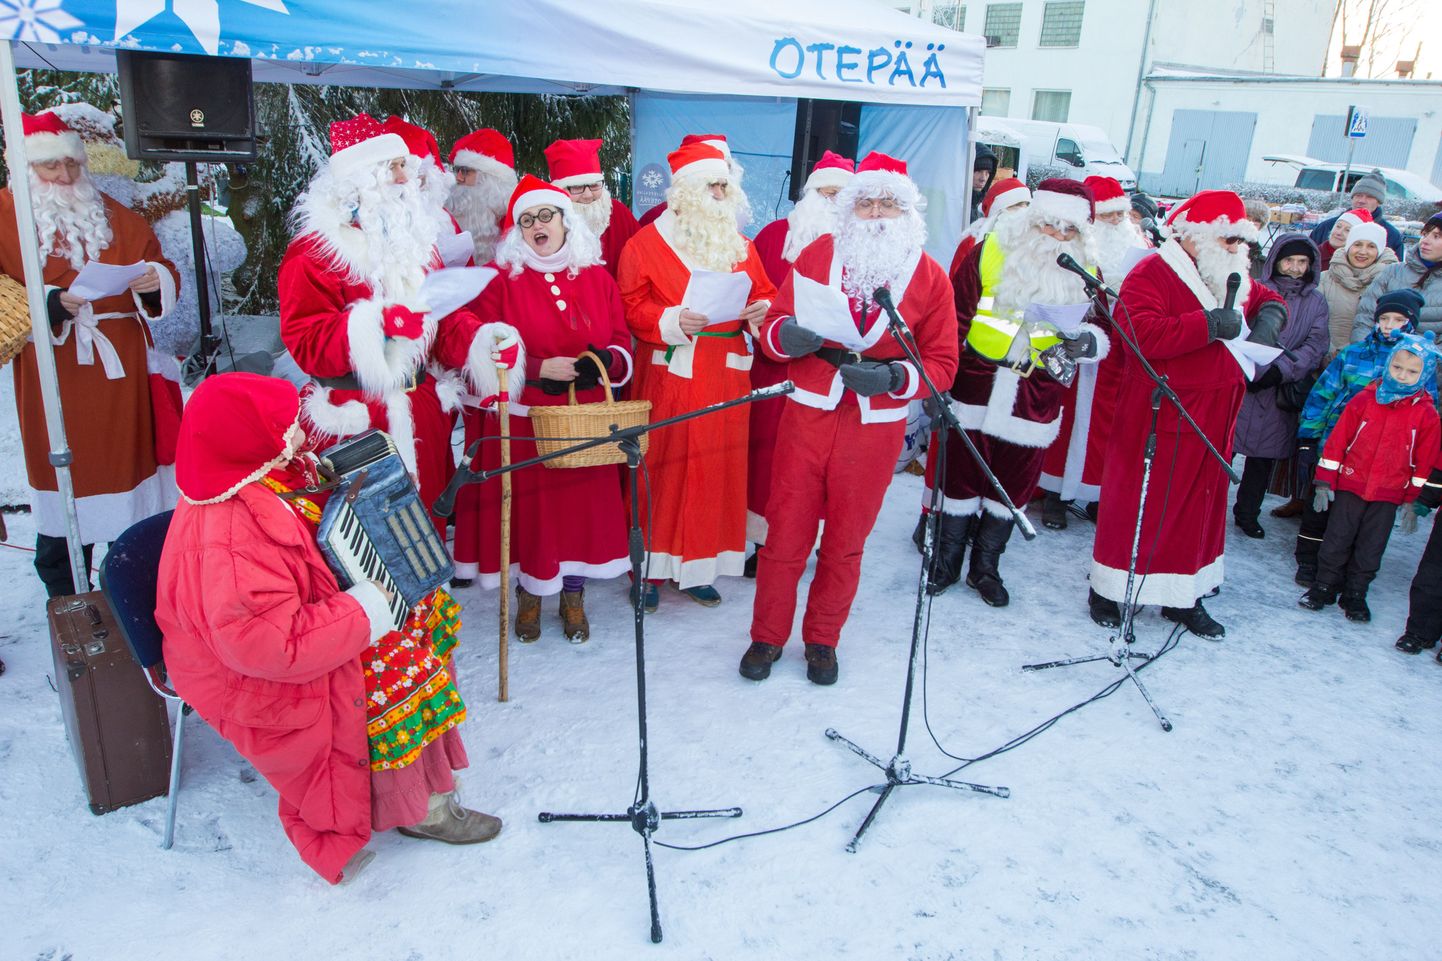 Jõuluvanade kokkutulek koos talveturuga Otepääl.